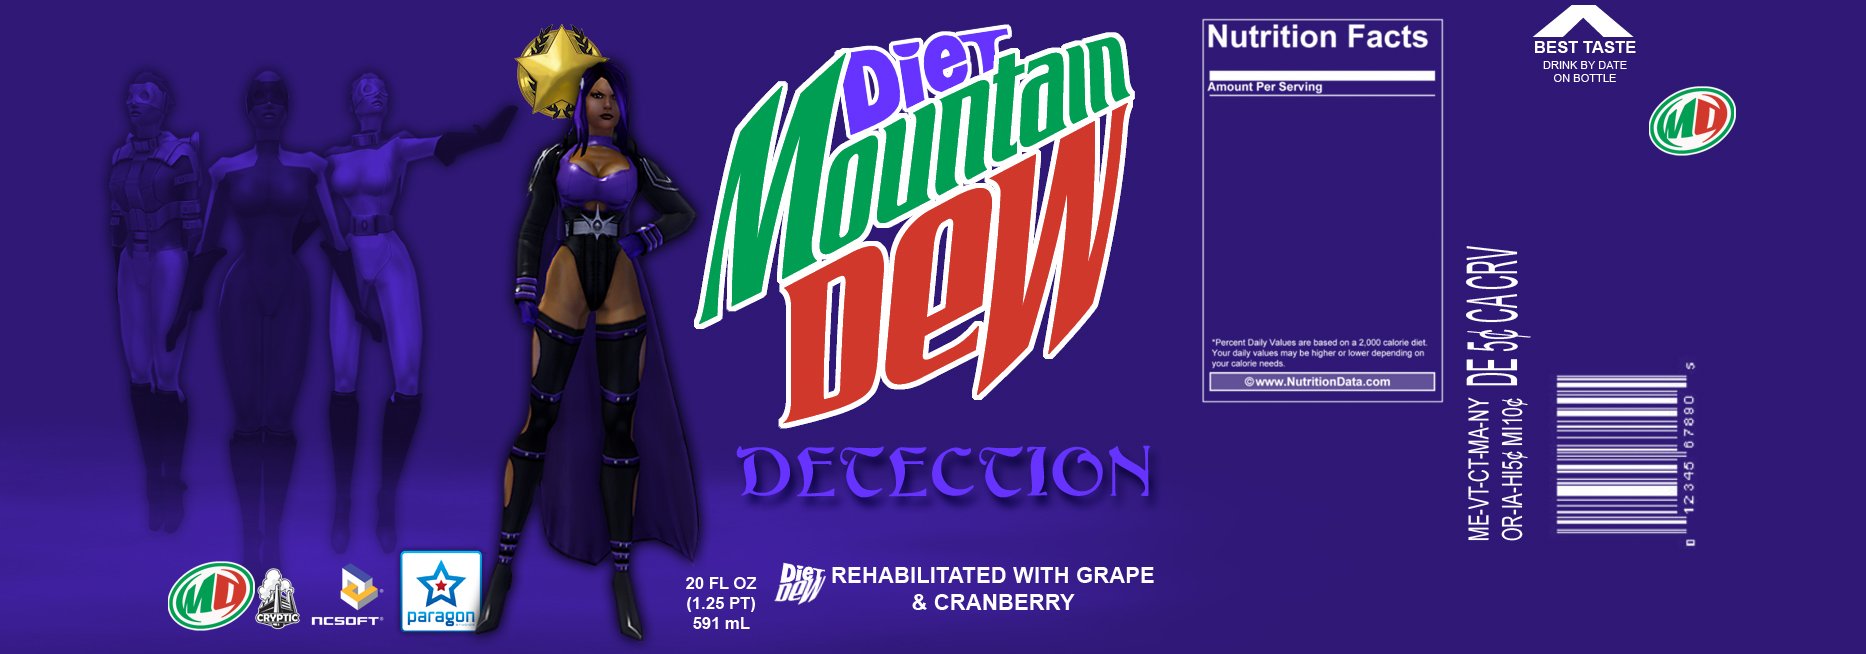 Diet Mtn Dew Wallpaper Diet mountain dew detection by